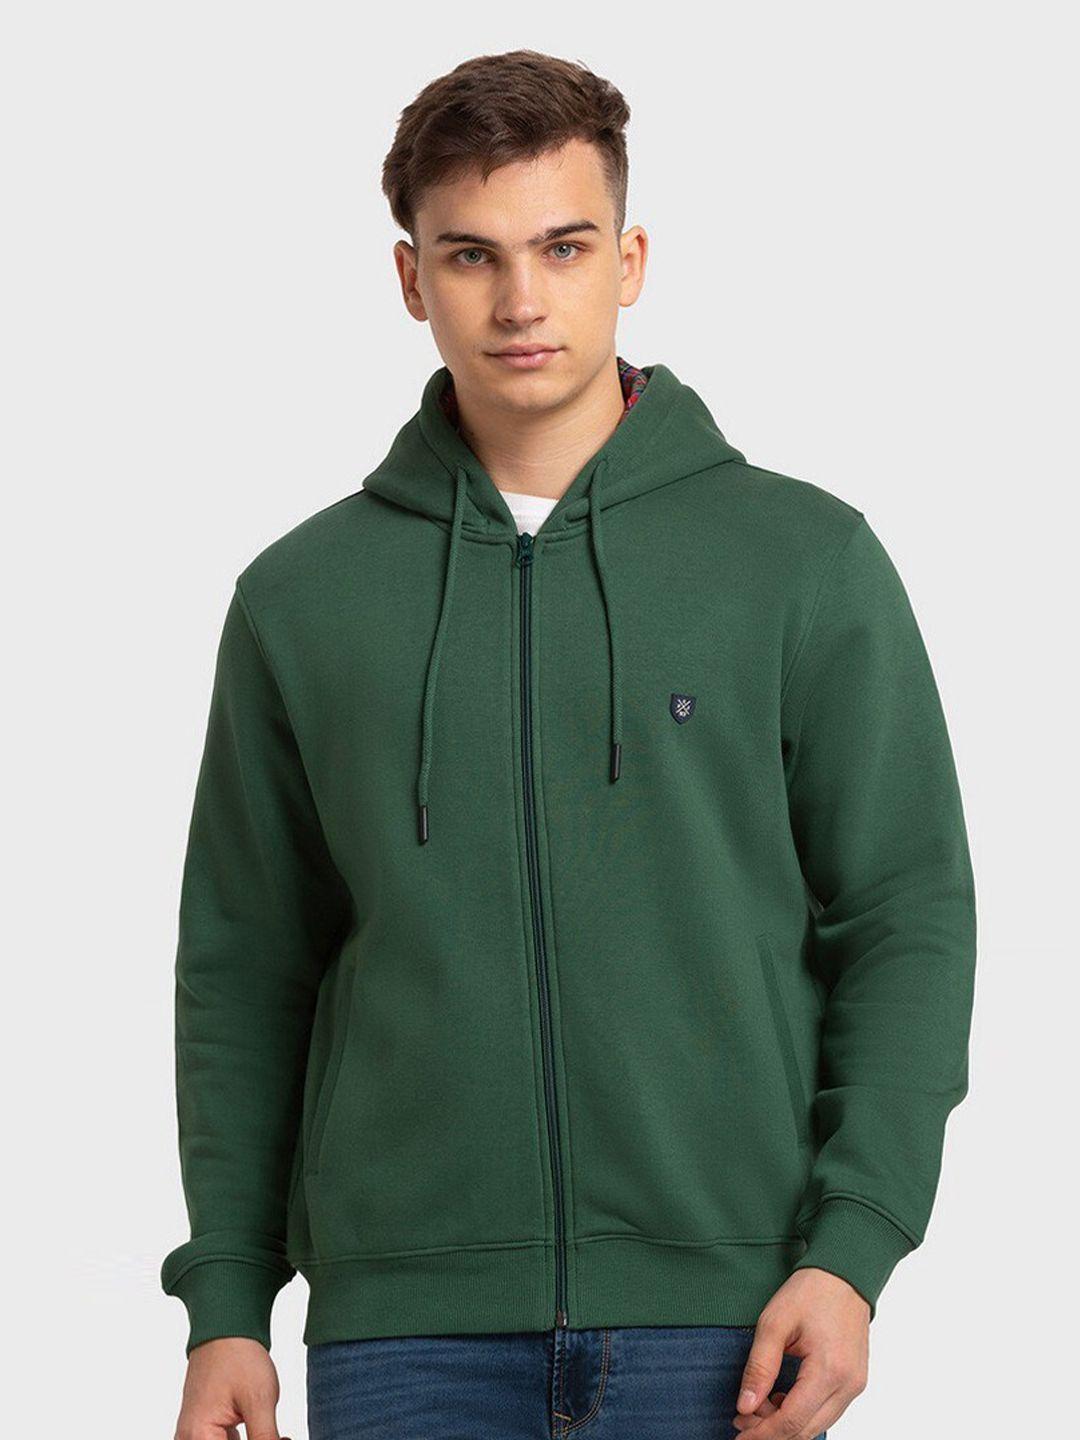 colorplus men green hooded sweatshirt